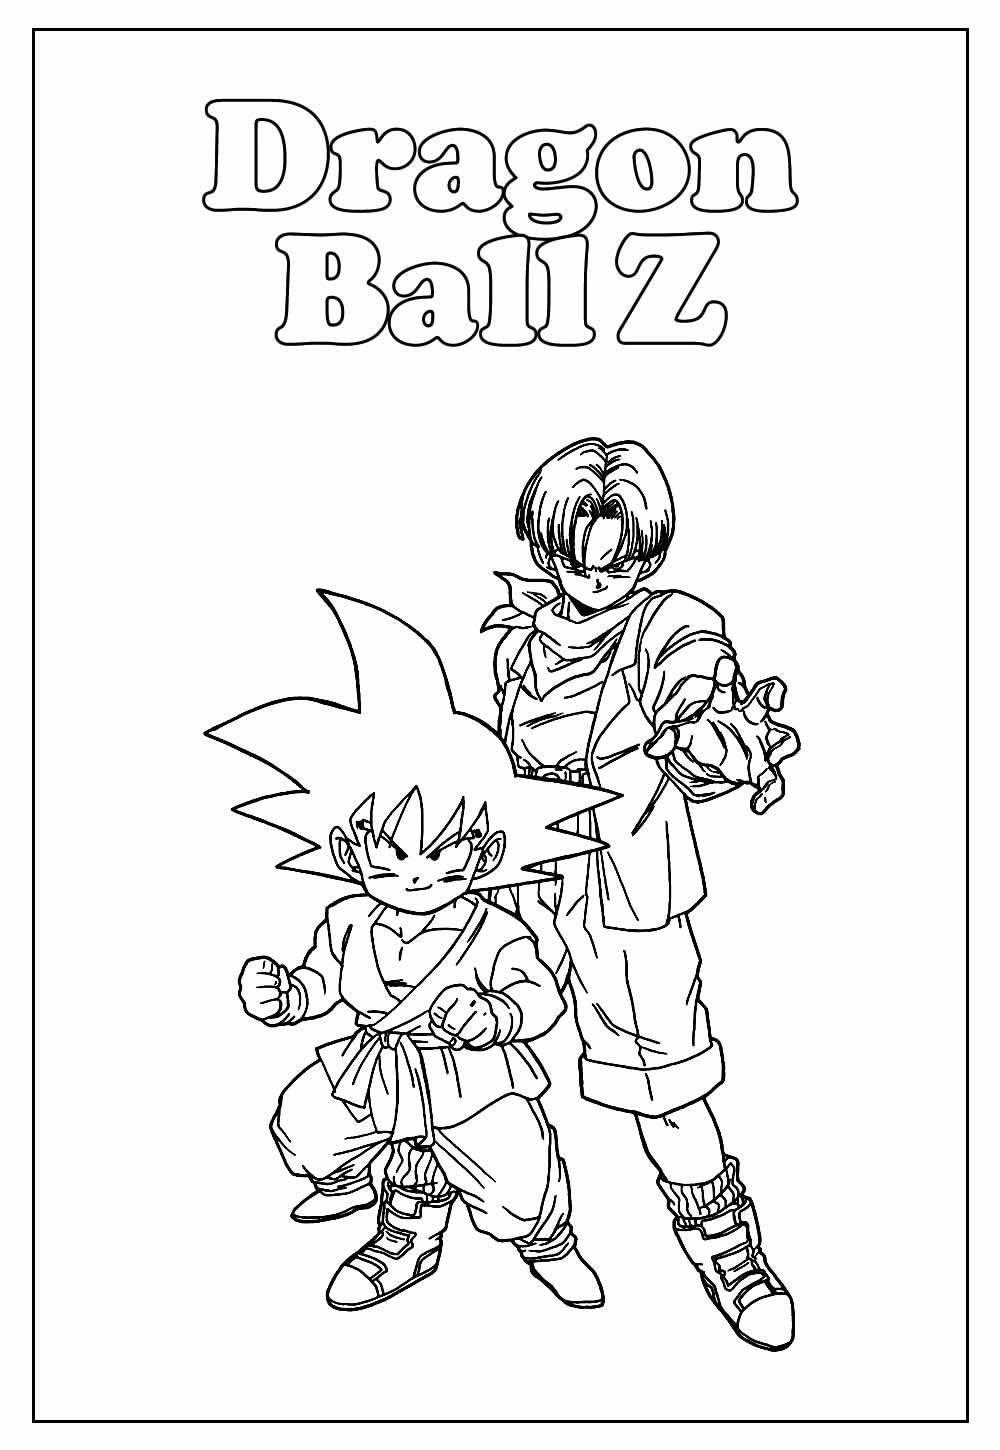 Desenho Educativo de Dragon Ball Z